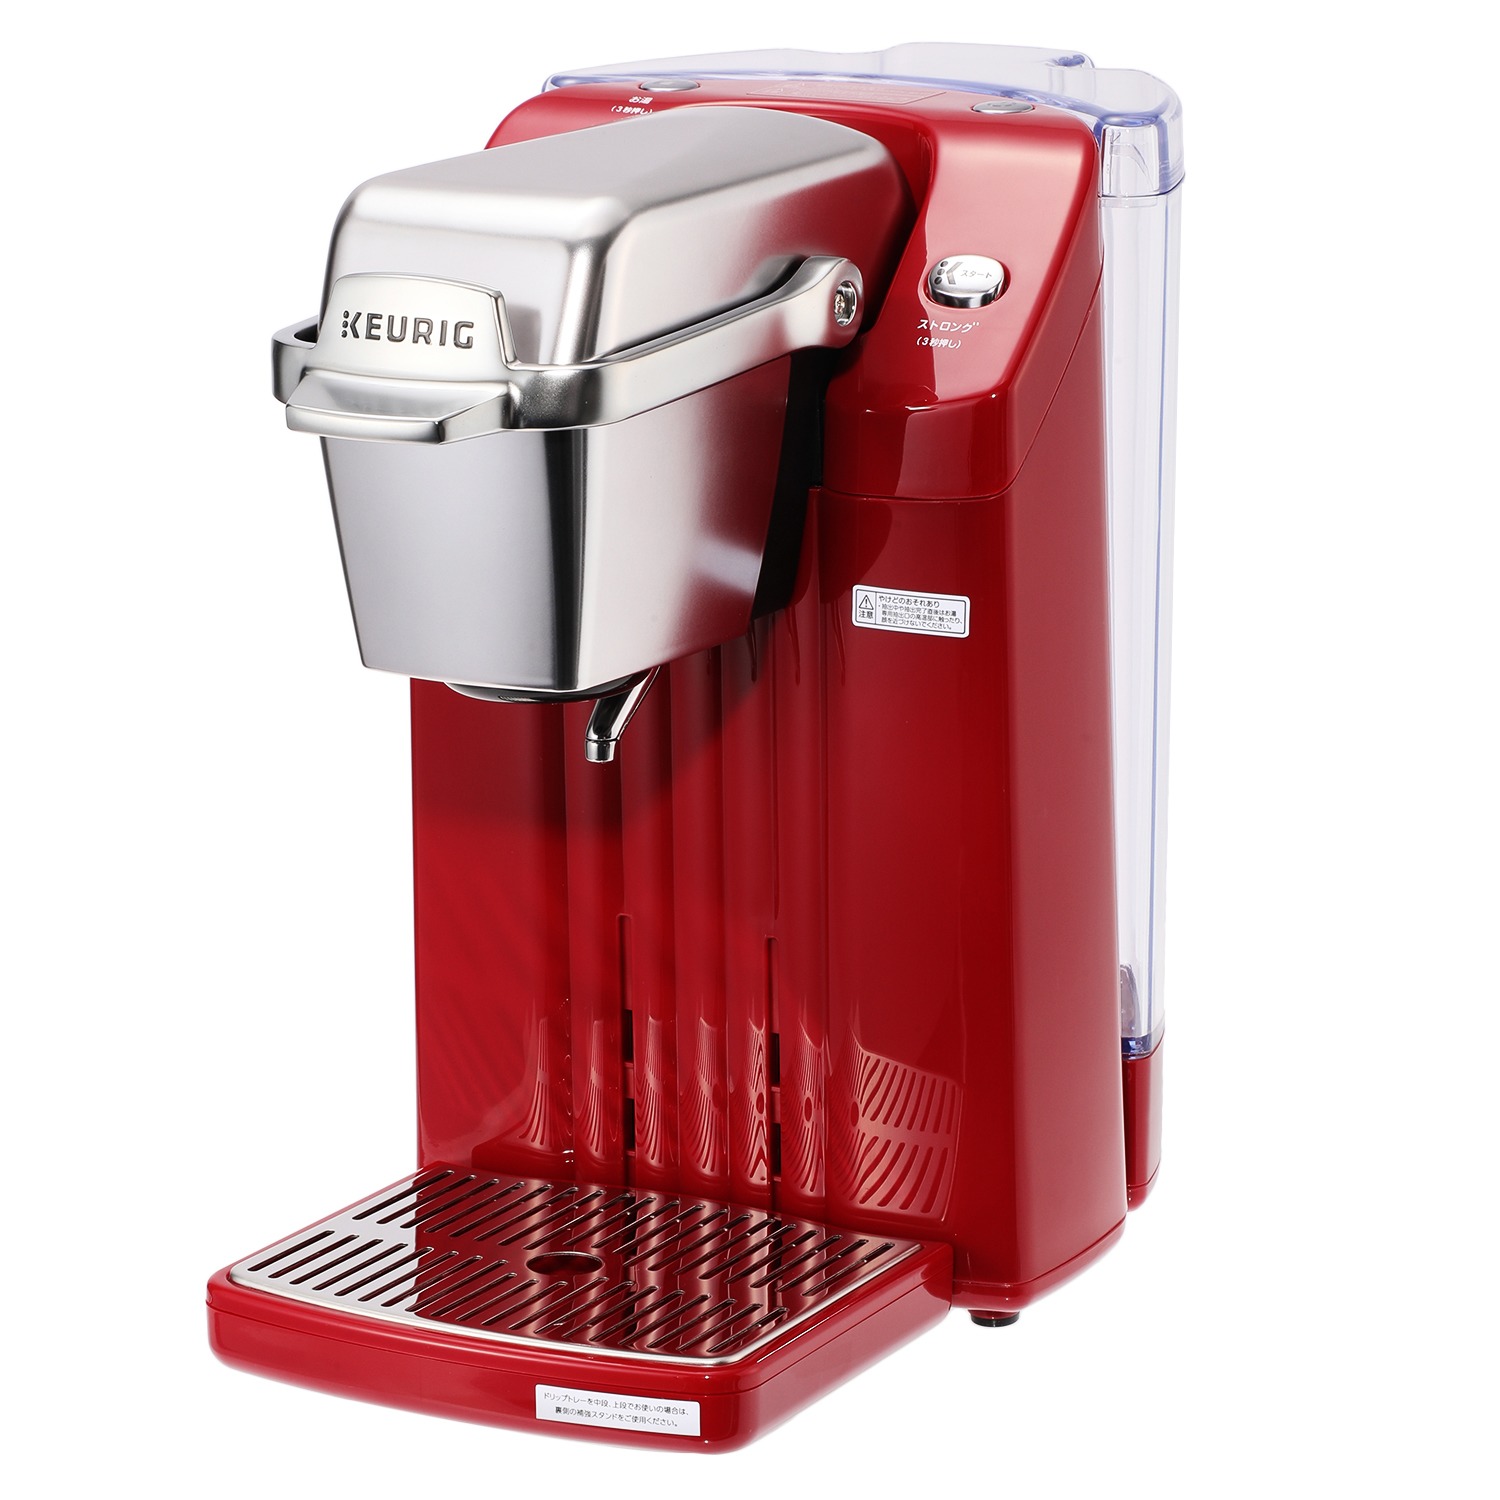 キューリグ カプセル式 コーヒーメーカー BS300 特別セット 家電 キッチン家電 コーヒーメーカー キューリグ|通販・テレビショッピングの